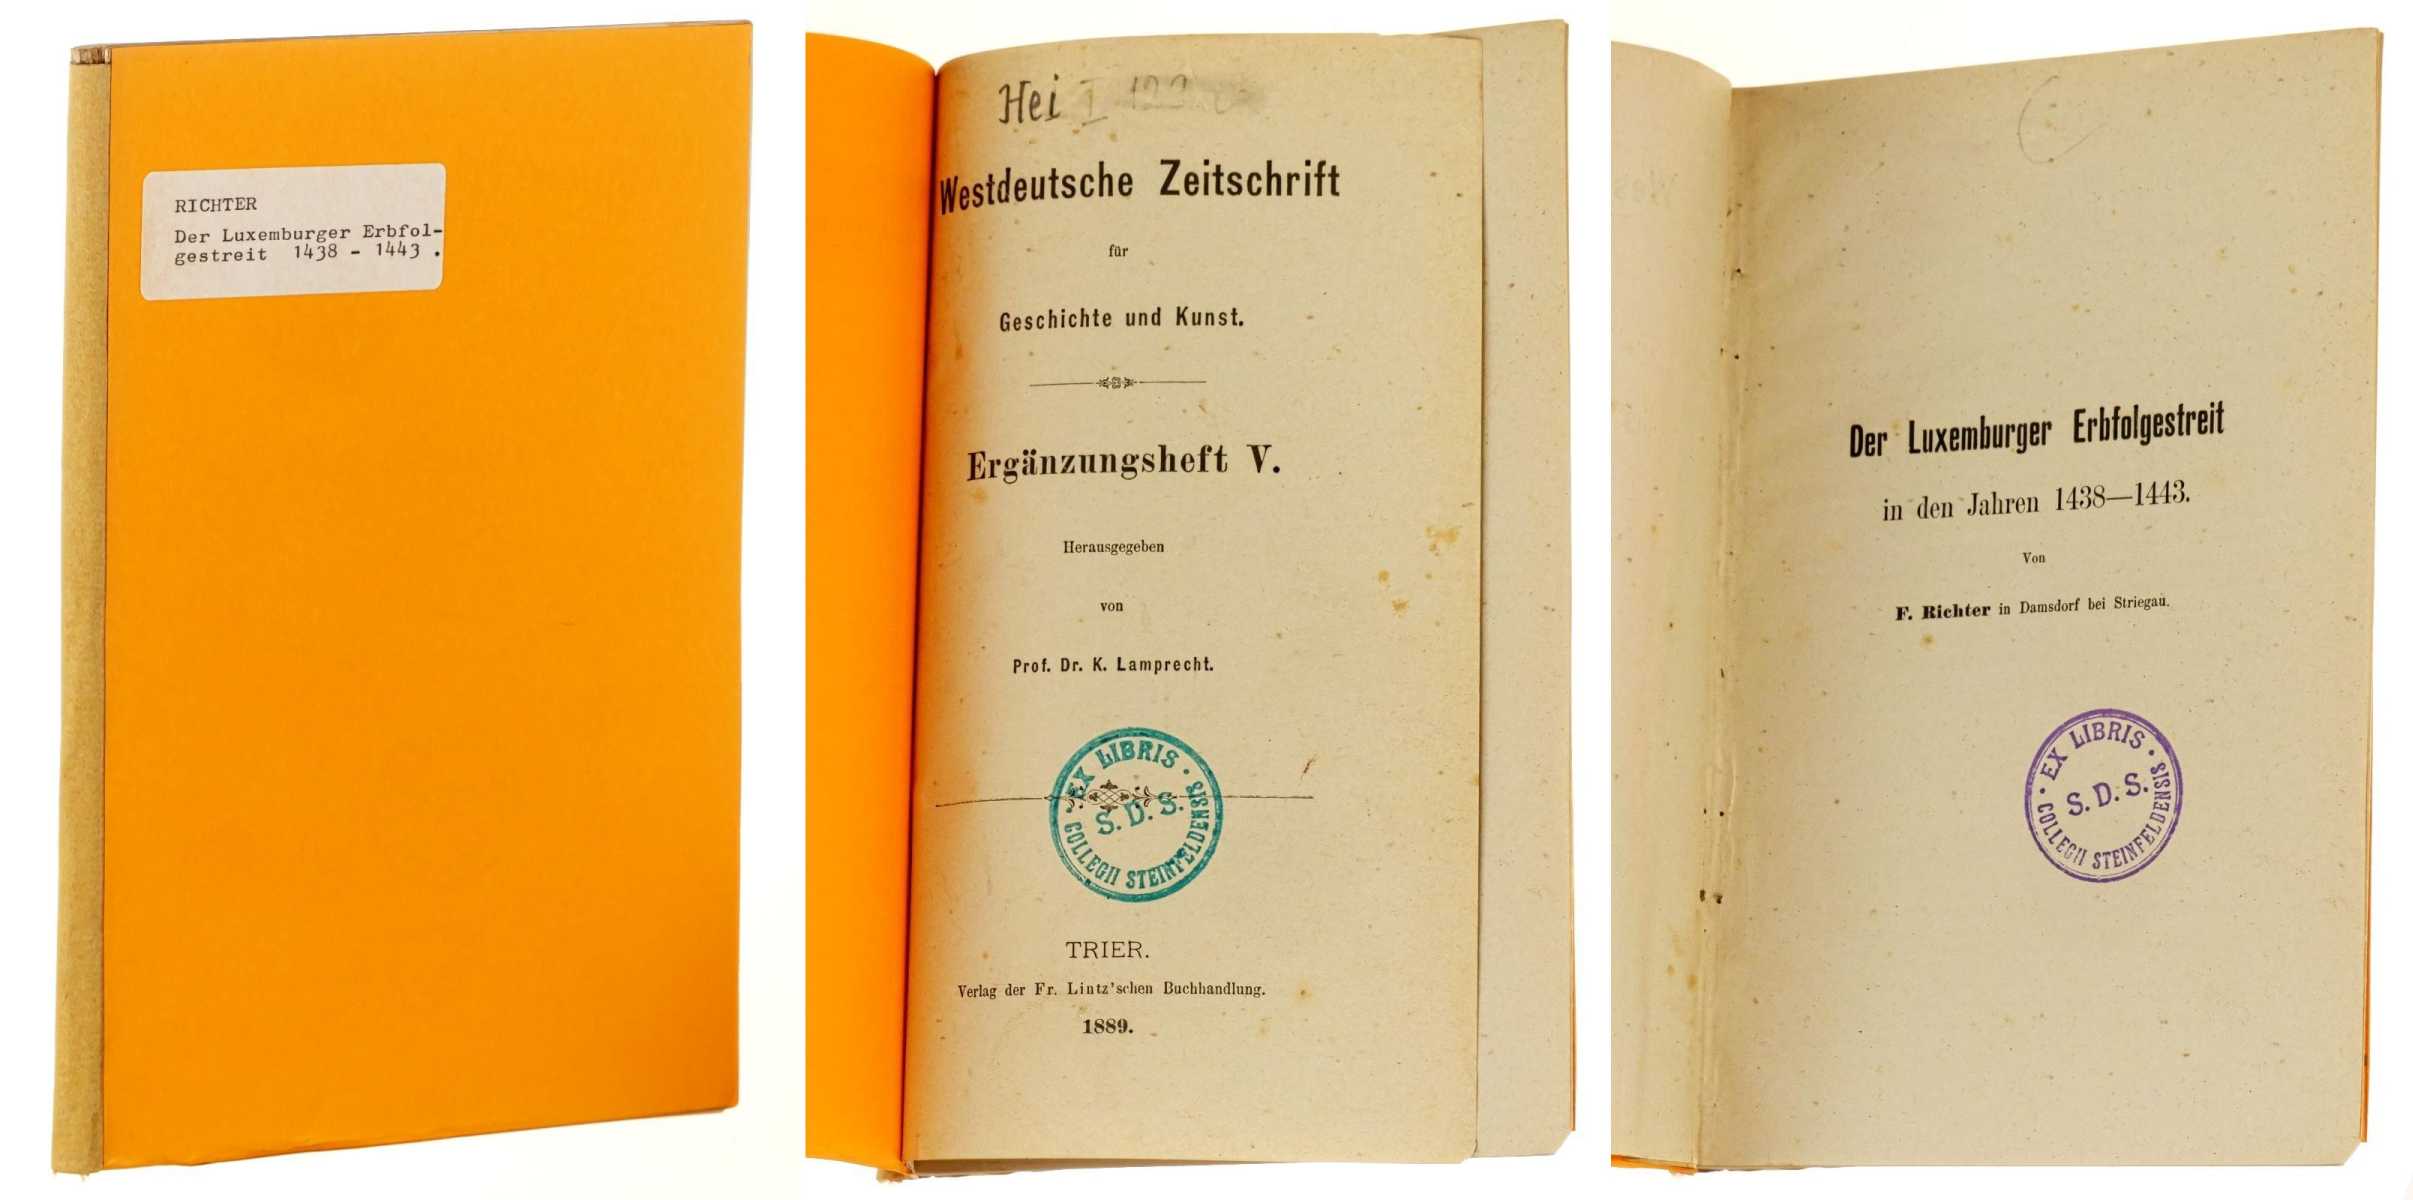   Westdeutsche Zeitschrift für Geschichte und Kunst; Ergänzungsheft 5. Hrsg. von K. Lamprecht. 